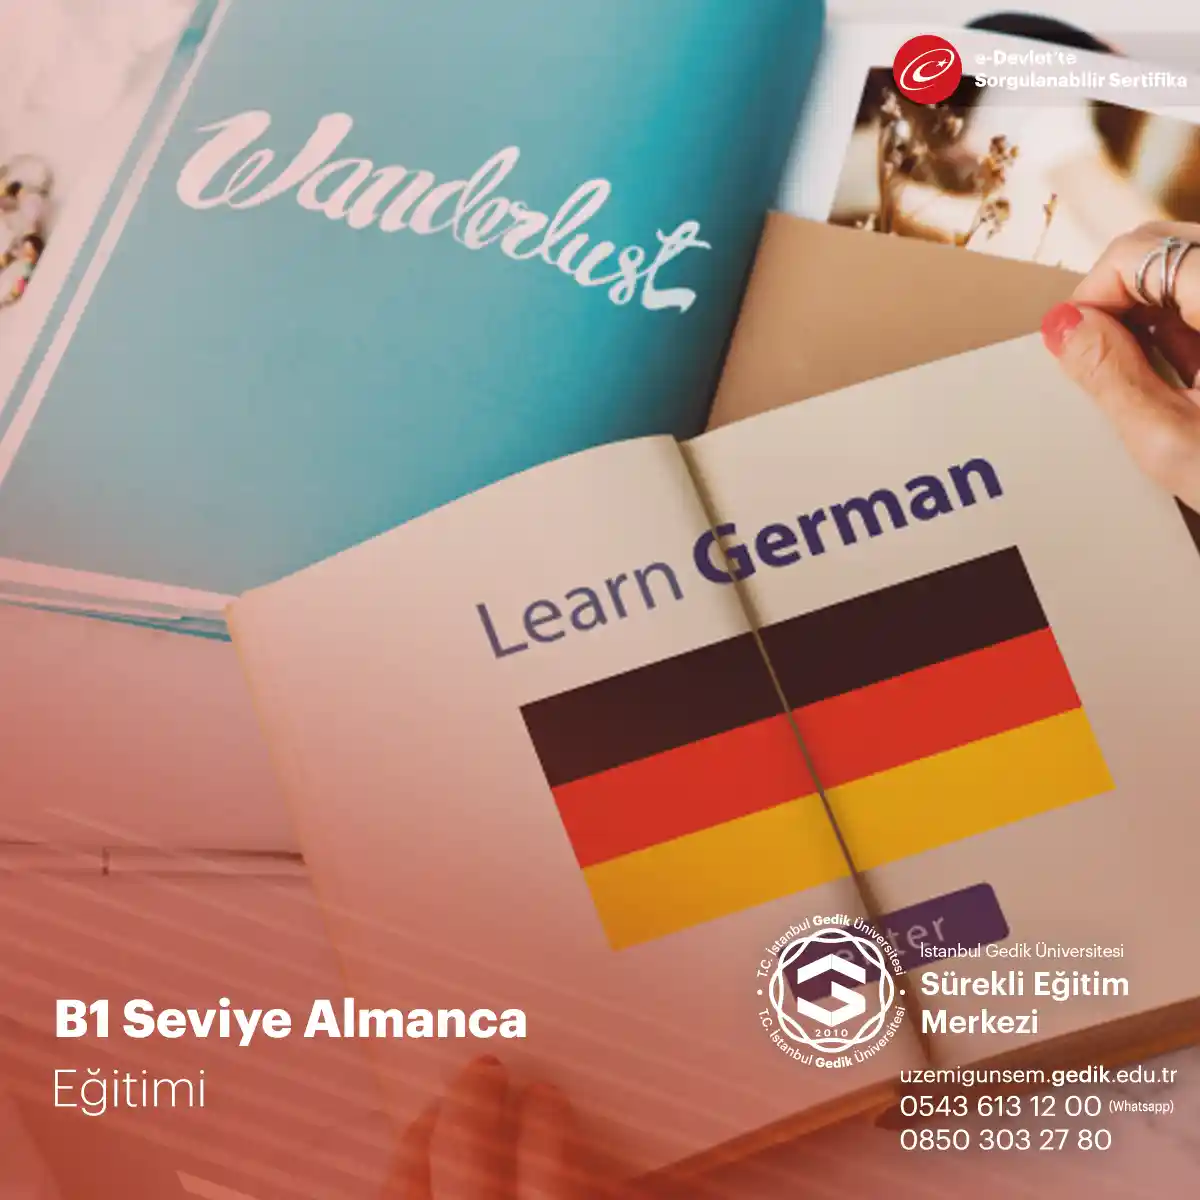 B1 Seviye Almanca Eğitimi